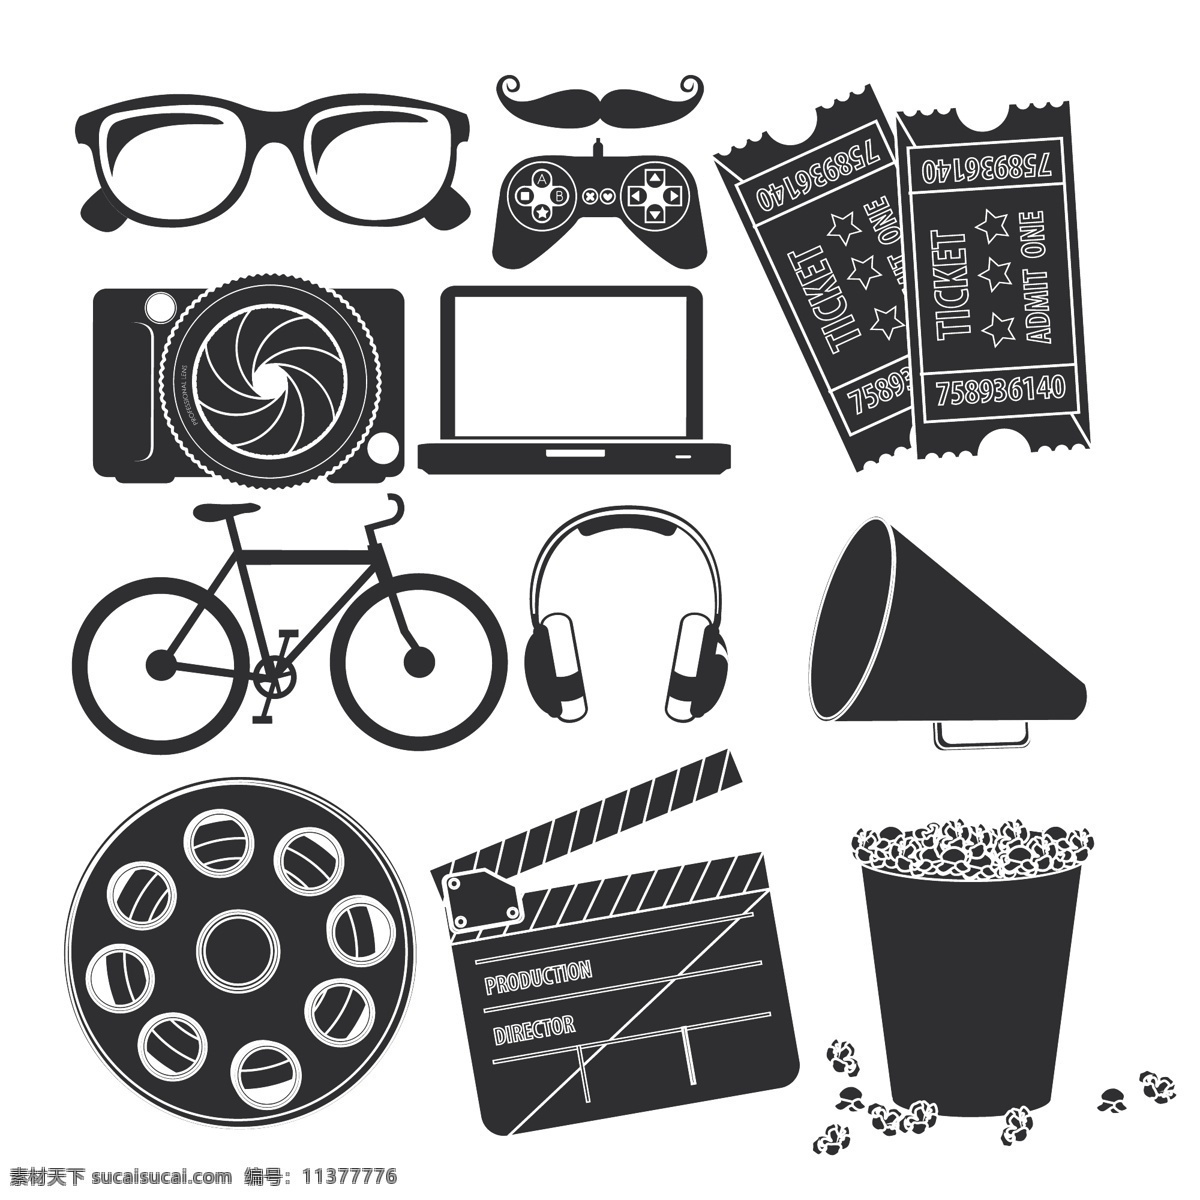 卡通 生活用品 插画 眼镜 胡子 电影票 自行车 耳麦 扬声器 场记板 潮人图案 背景 生活百科 矢量素材 白色